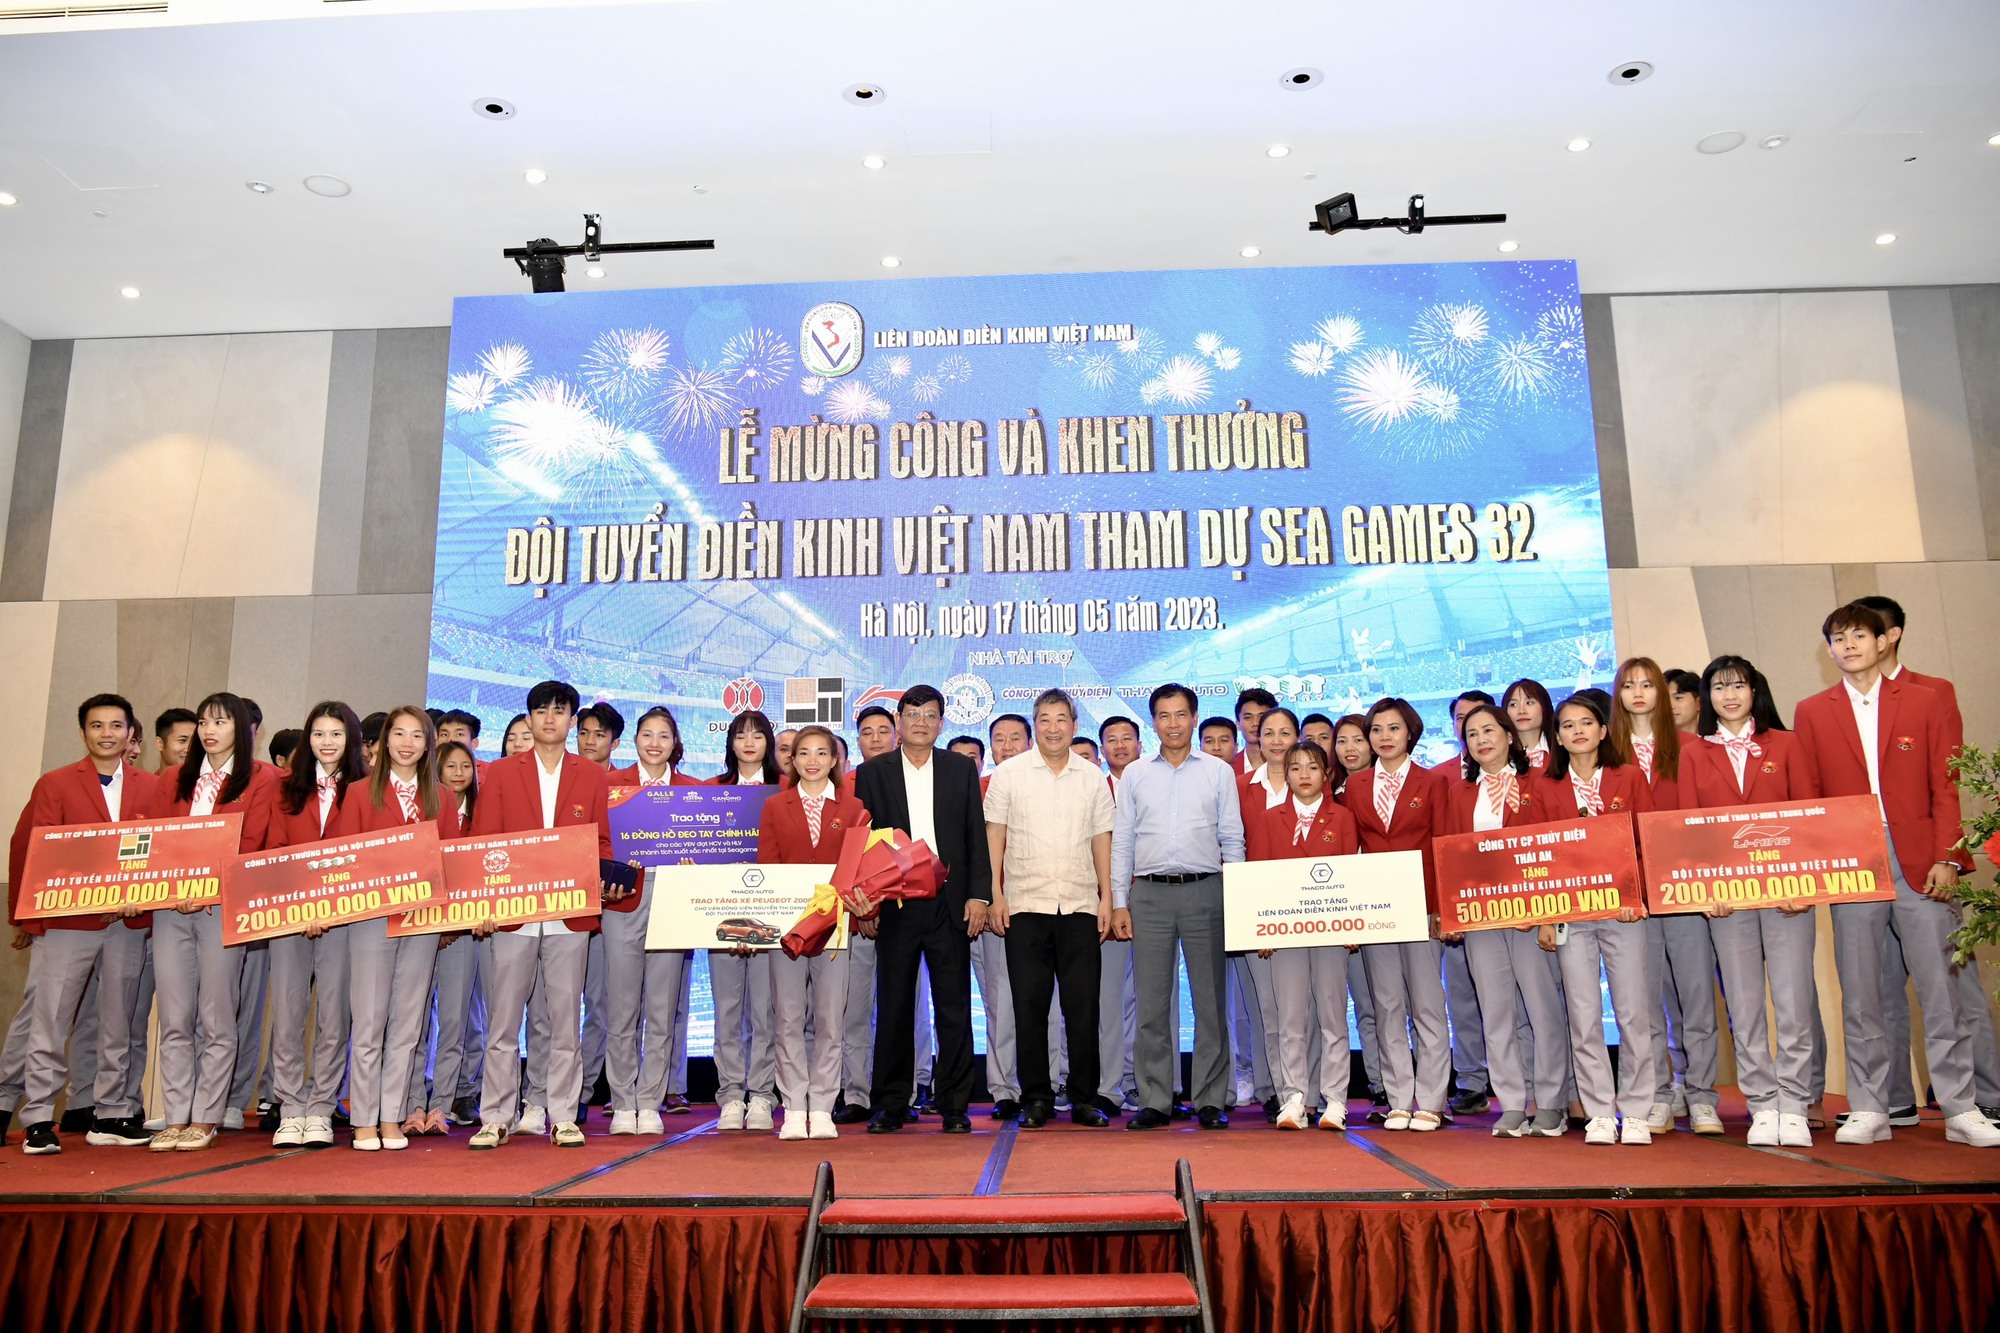 Nguyễn Thị Oanh và đội điền kinh Việt Nam nhận mưa tiền thưởng sau vinh quang SEA Games 32 - Ảnh 4.